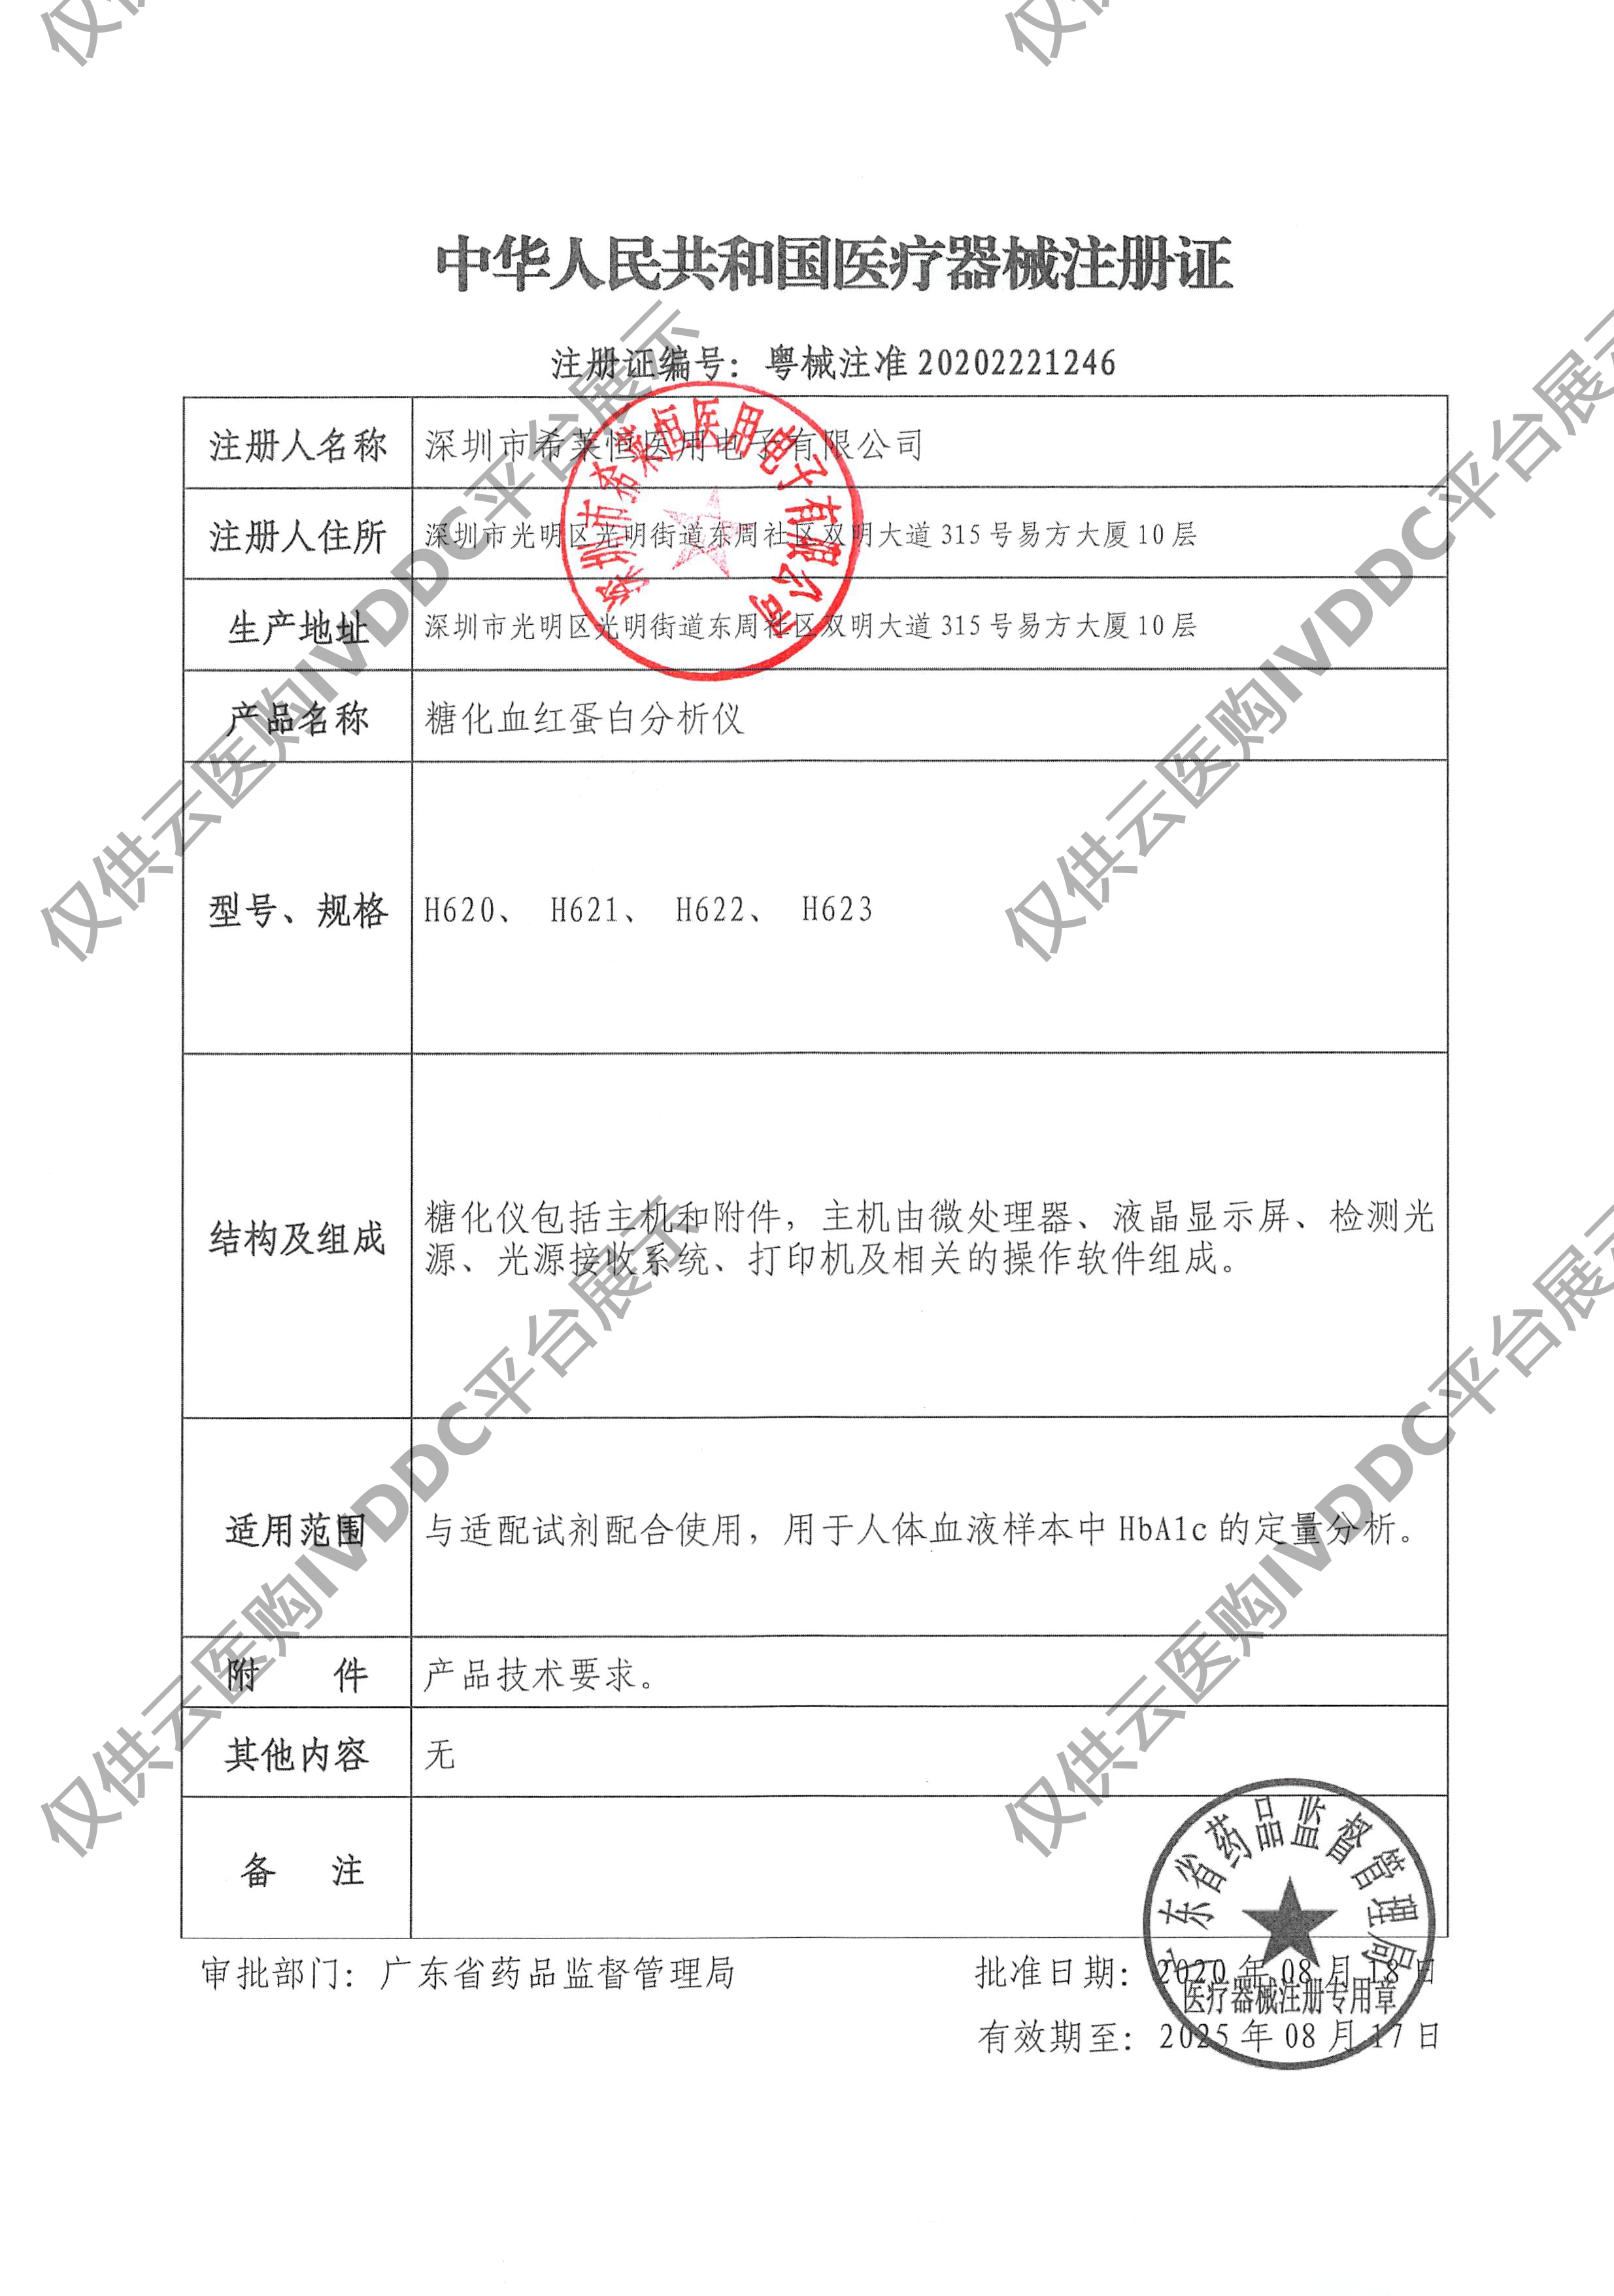 【希莱恒】糖化血红蛋白分析仪H618注册证